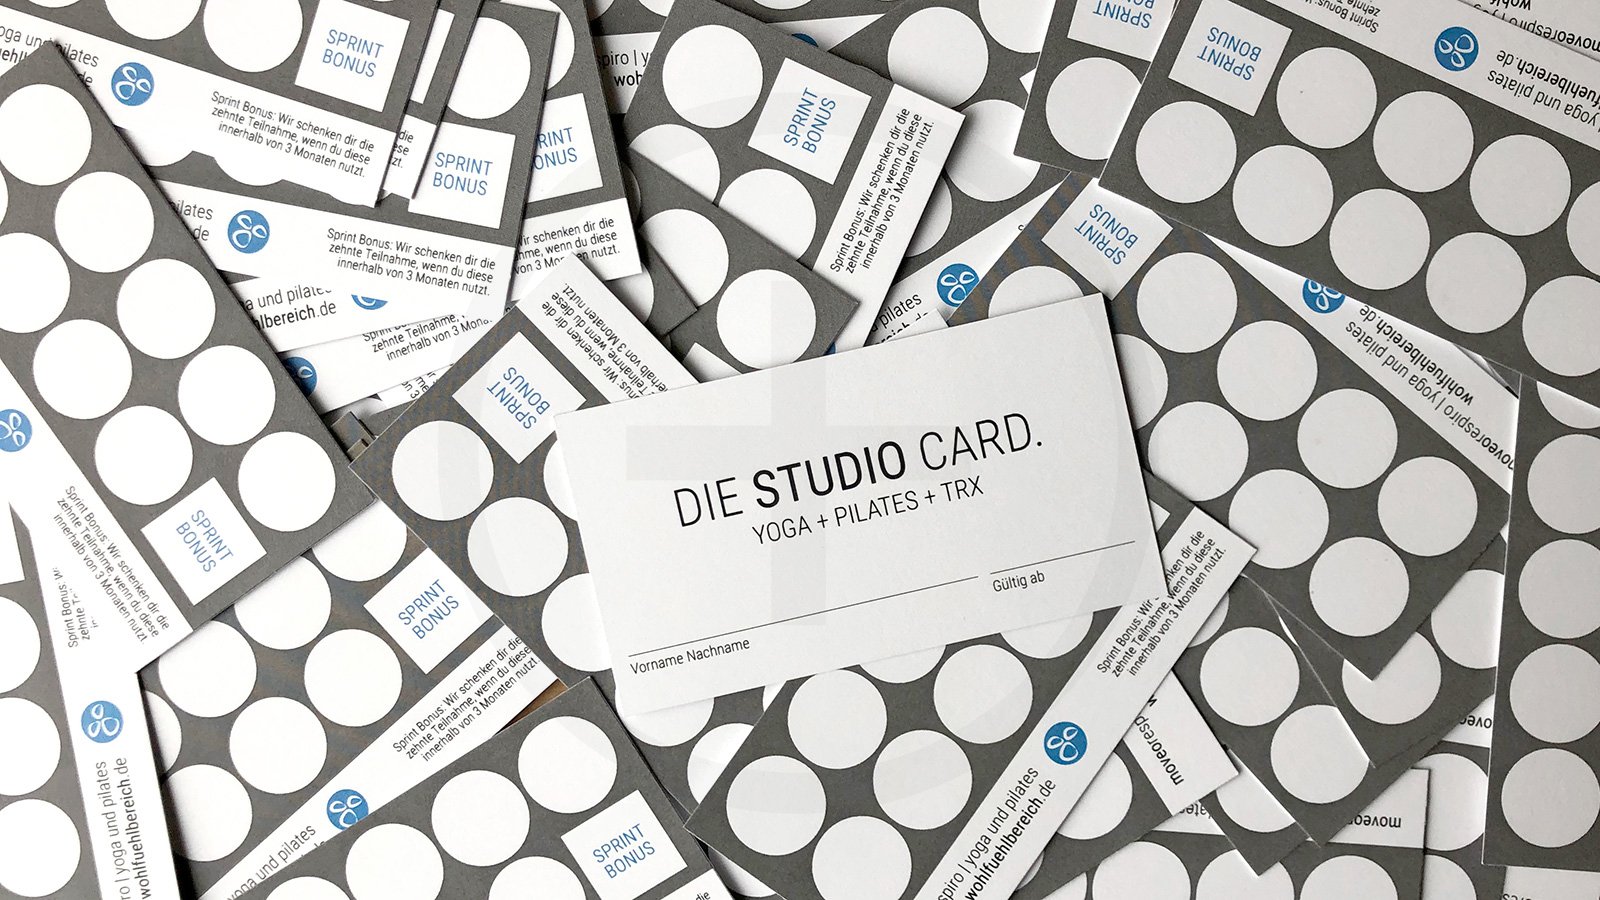 Alle Kursformate mit nur einer Card: Die Studio Card